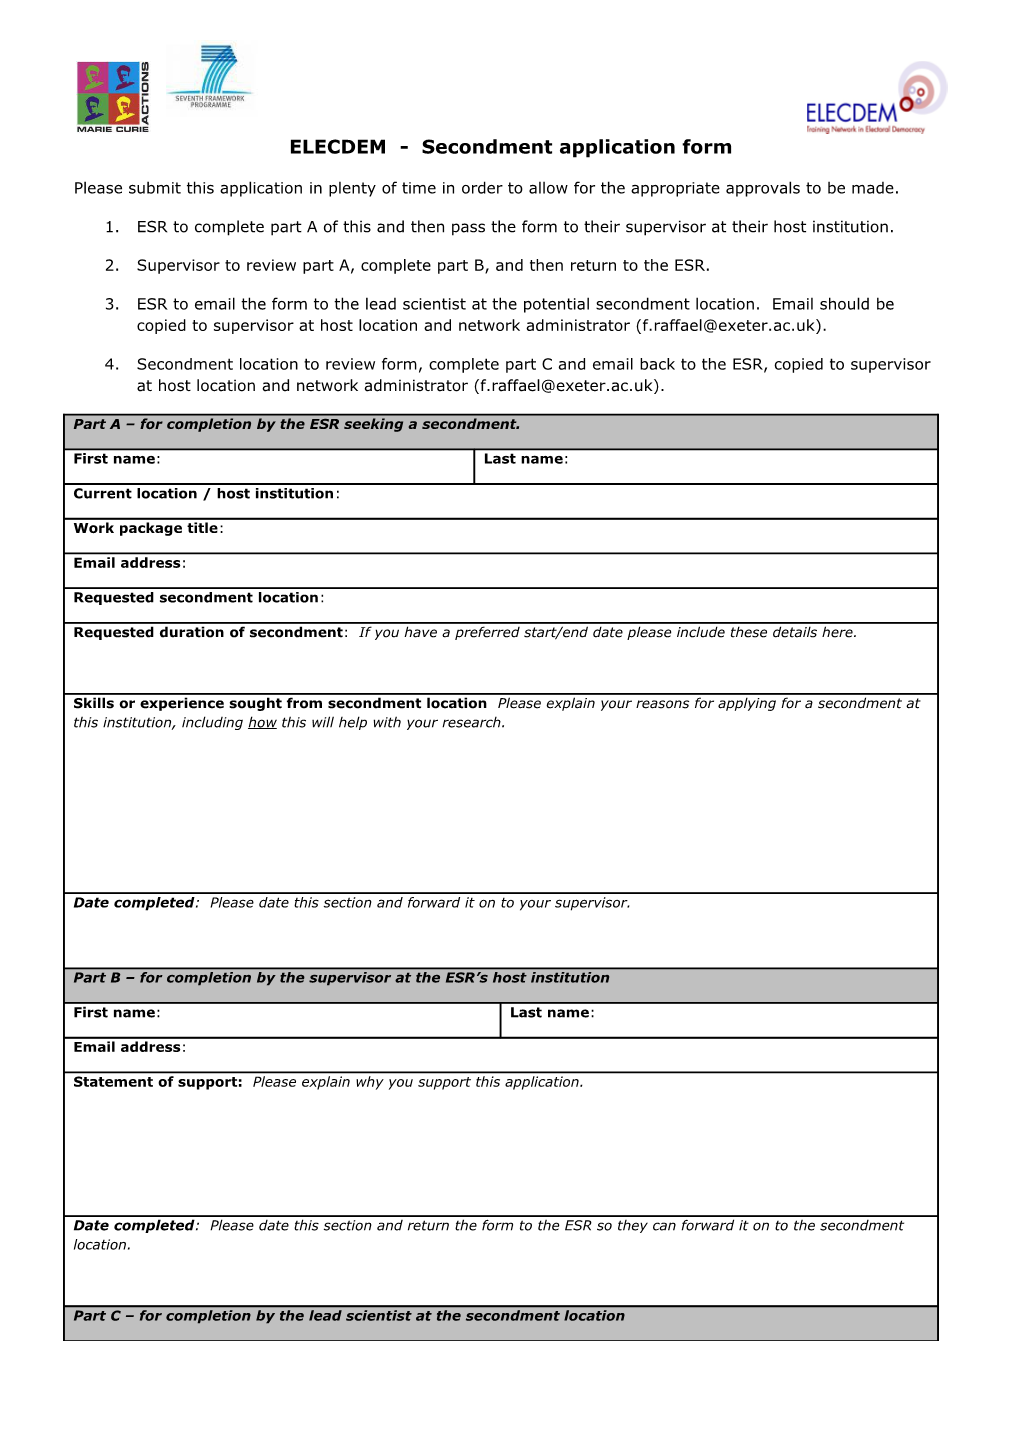 ELECDEM - Secondment Application Form